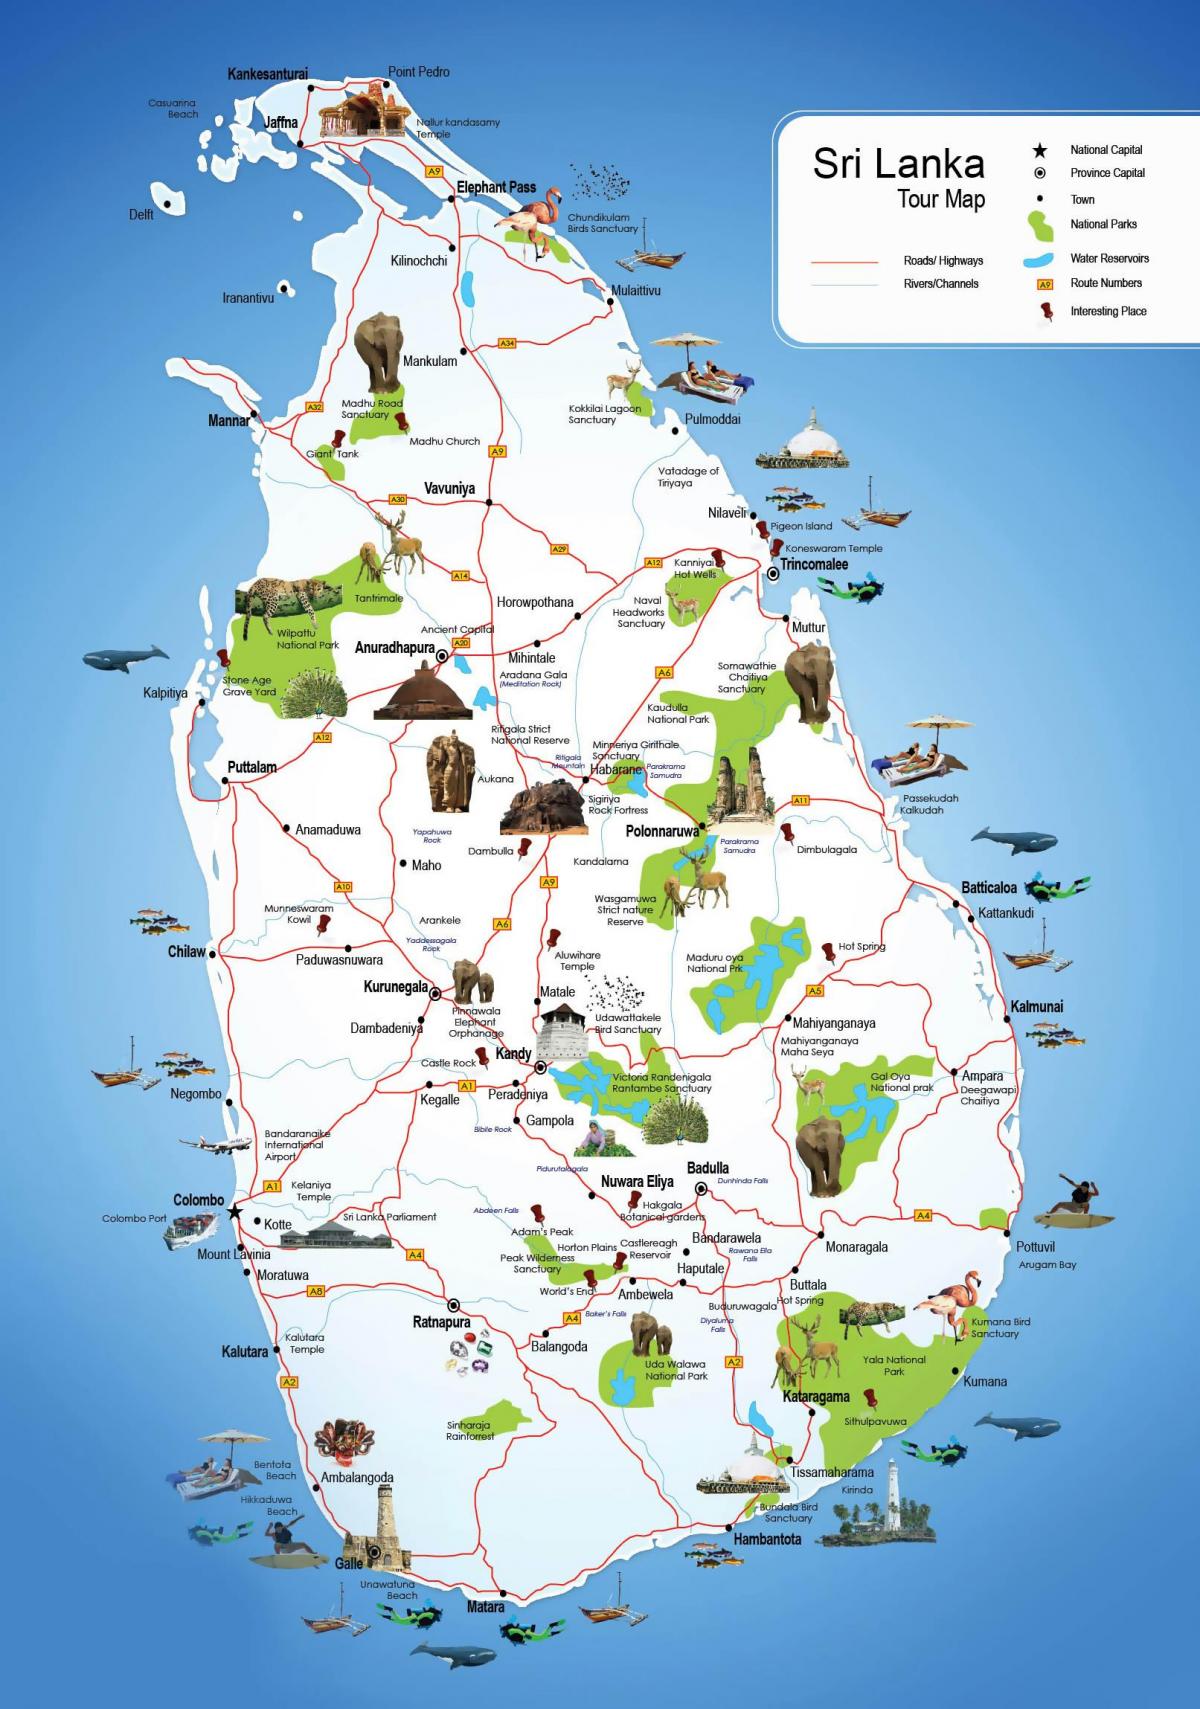 τουριστικά μέρη στη Σρι Λάνκα εμφάνιση χάρτη